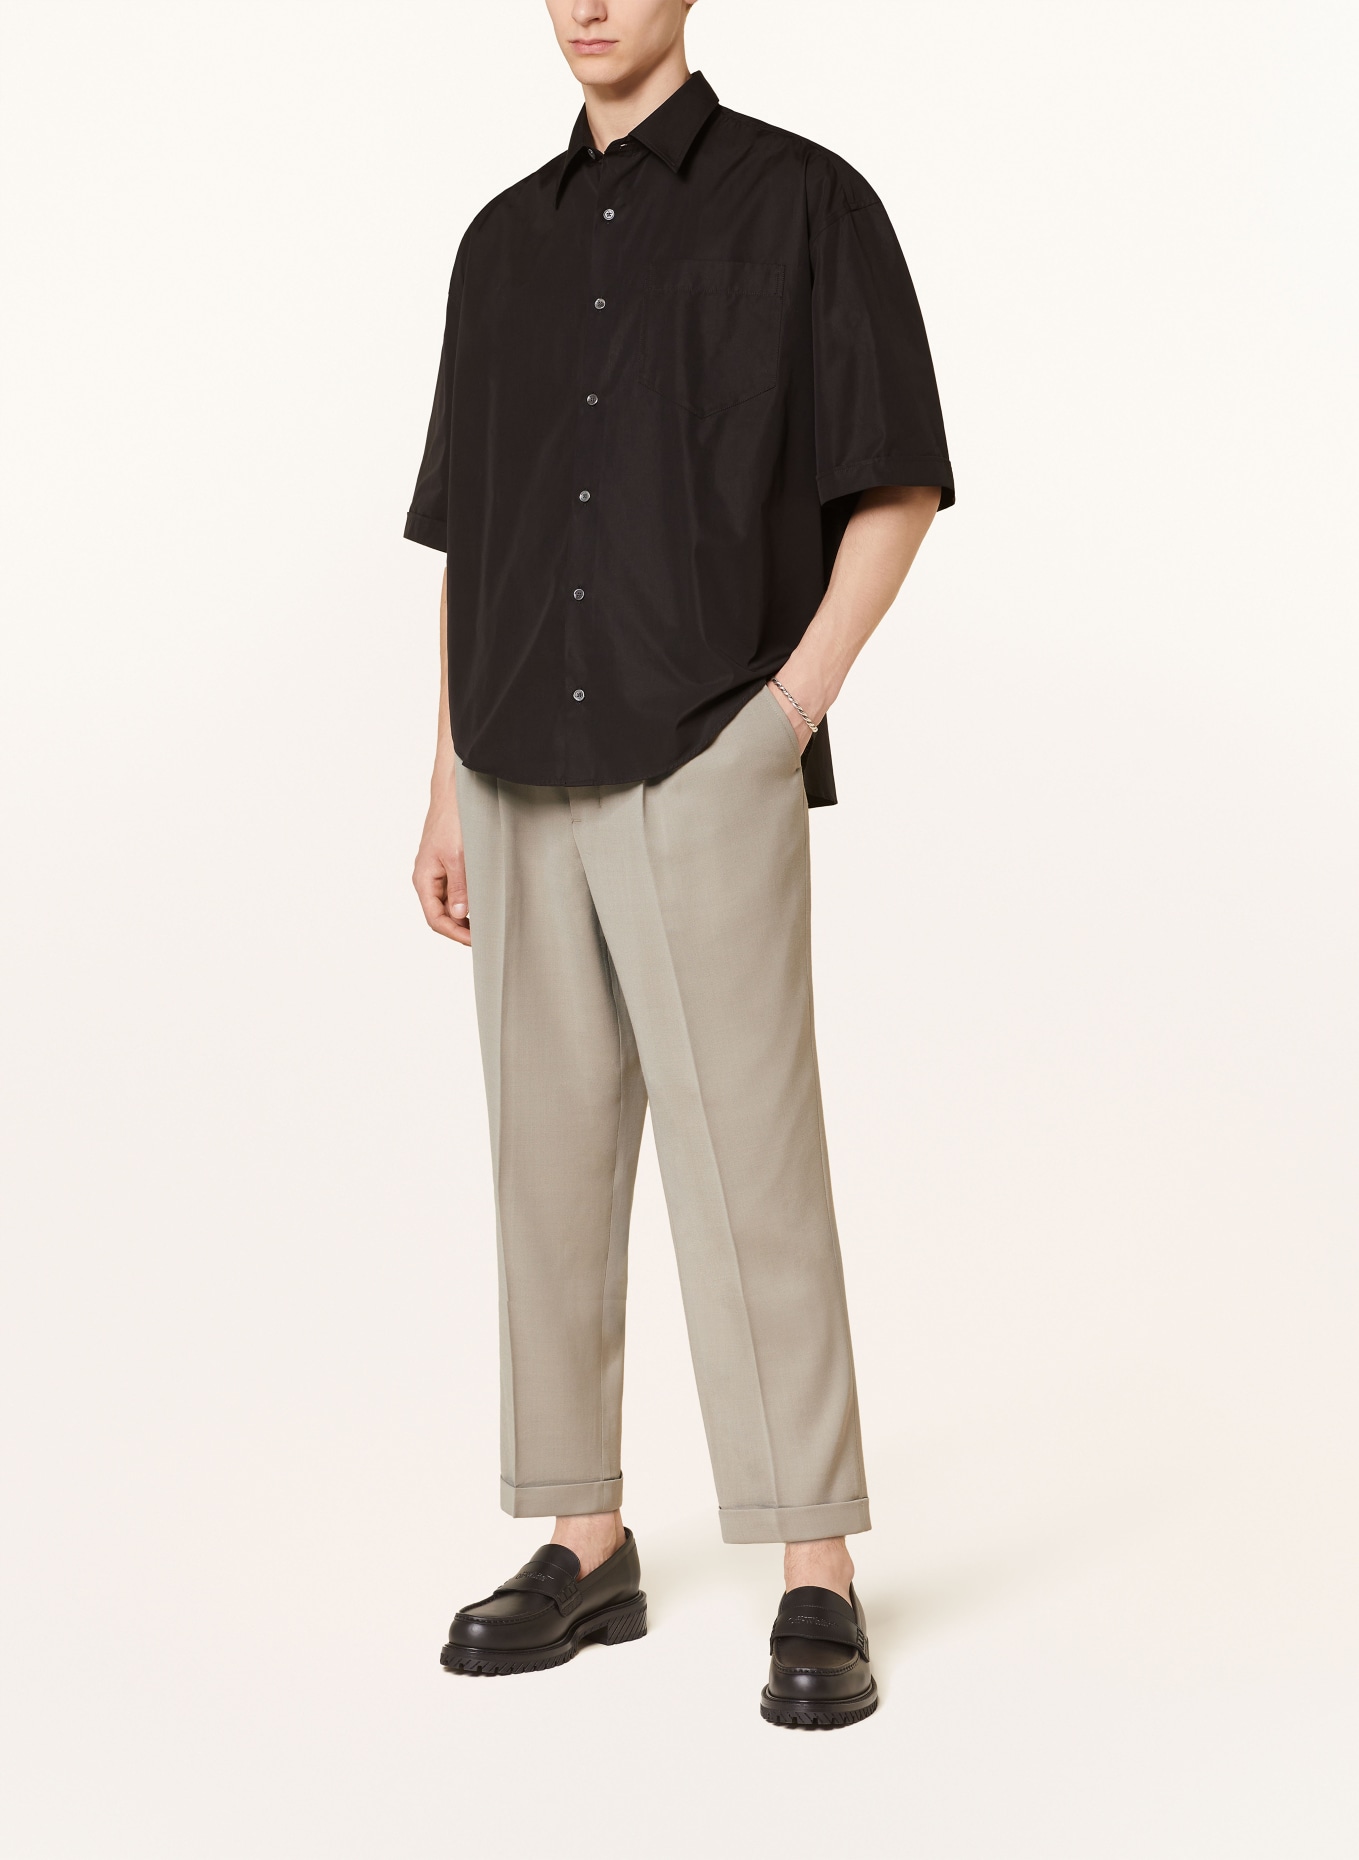 AMI PARIS Short sleeve shirt comfort fit, Color: BLACK (Image 2)